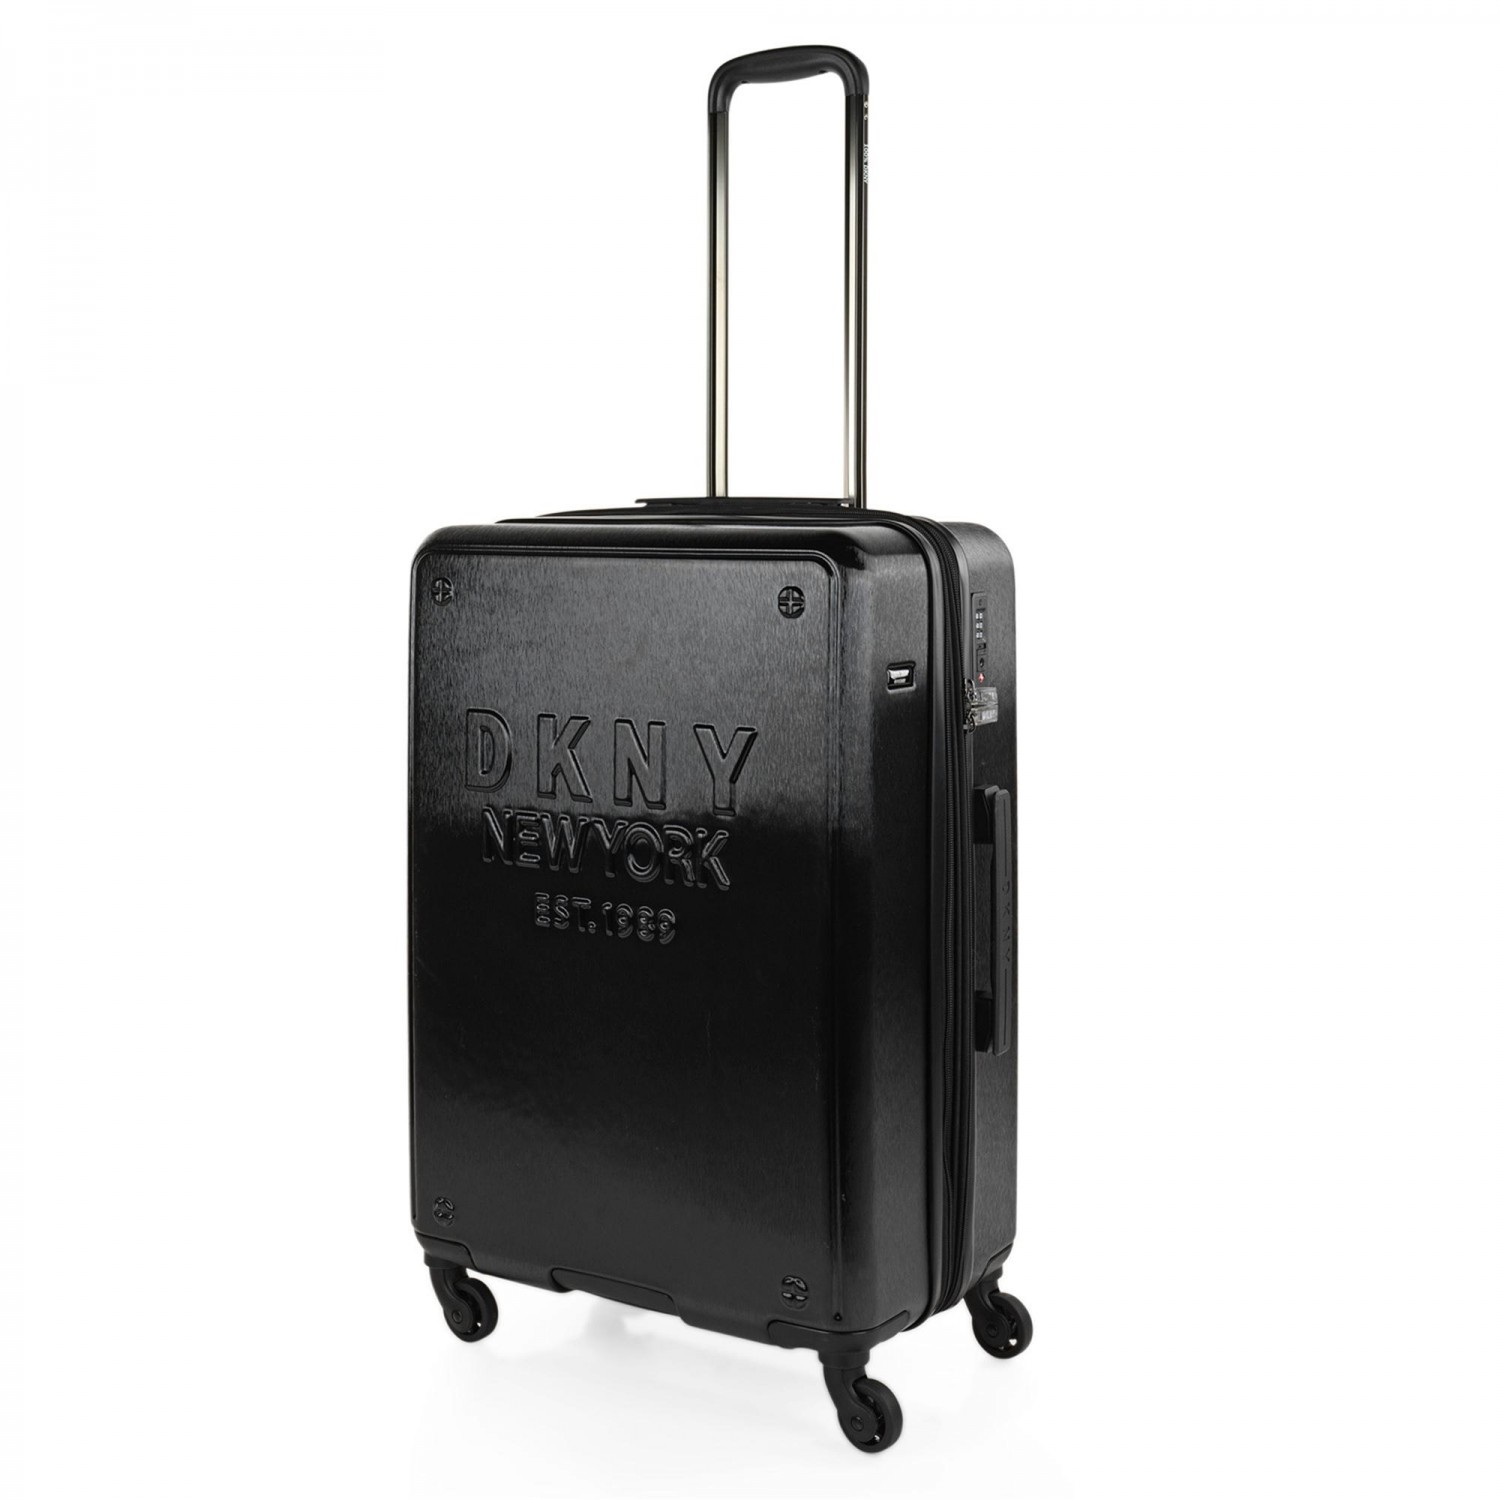 dkny upright luggage｜TikTok Search